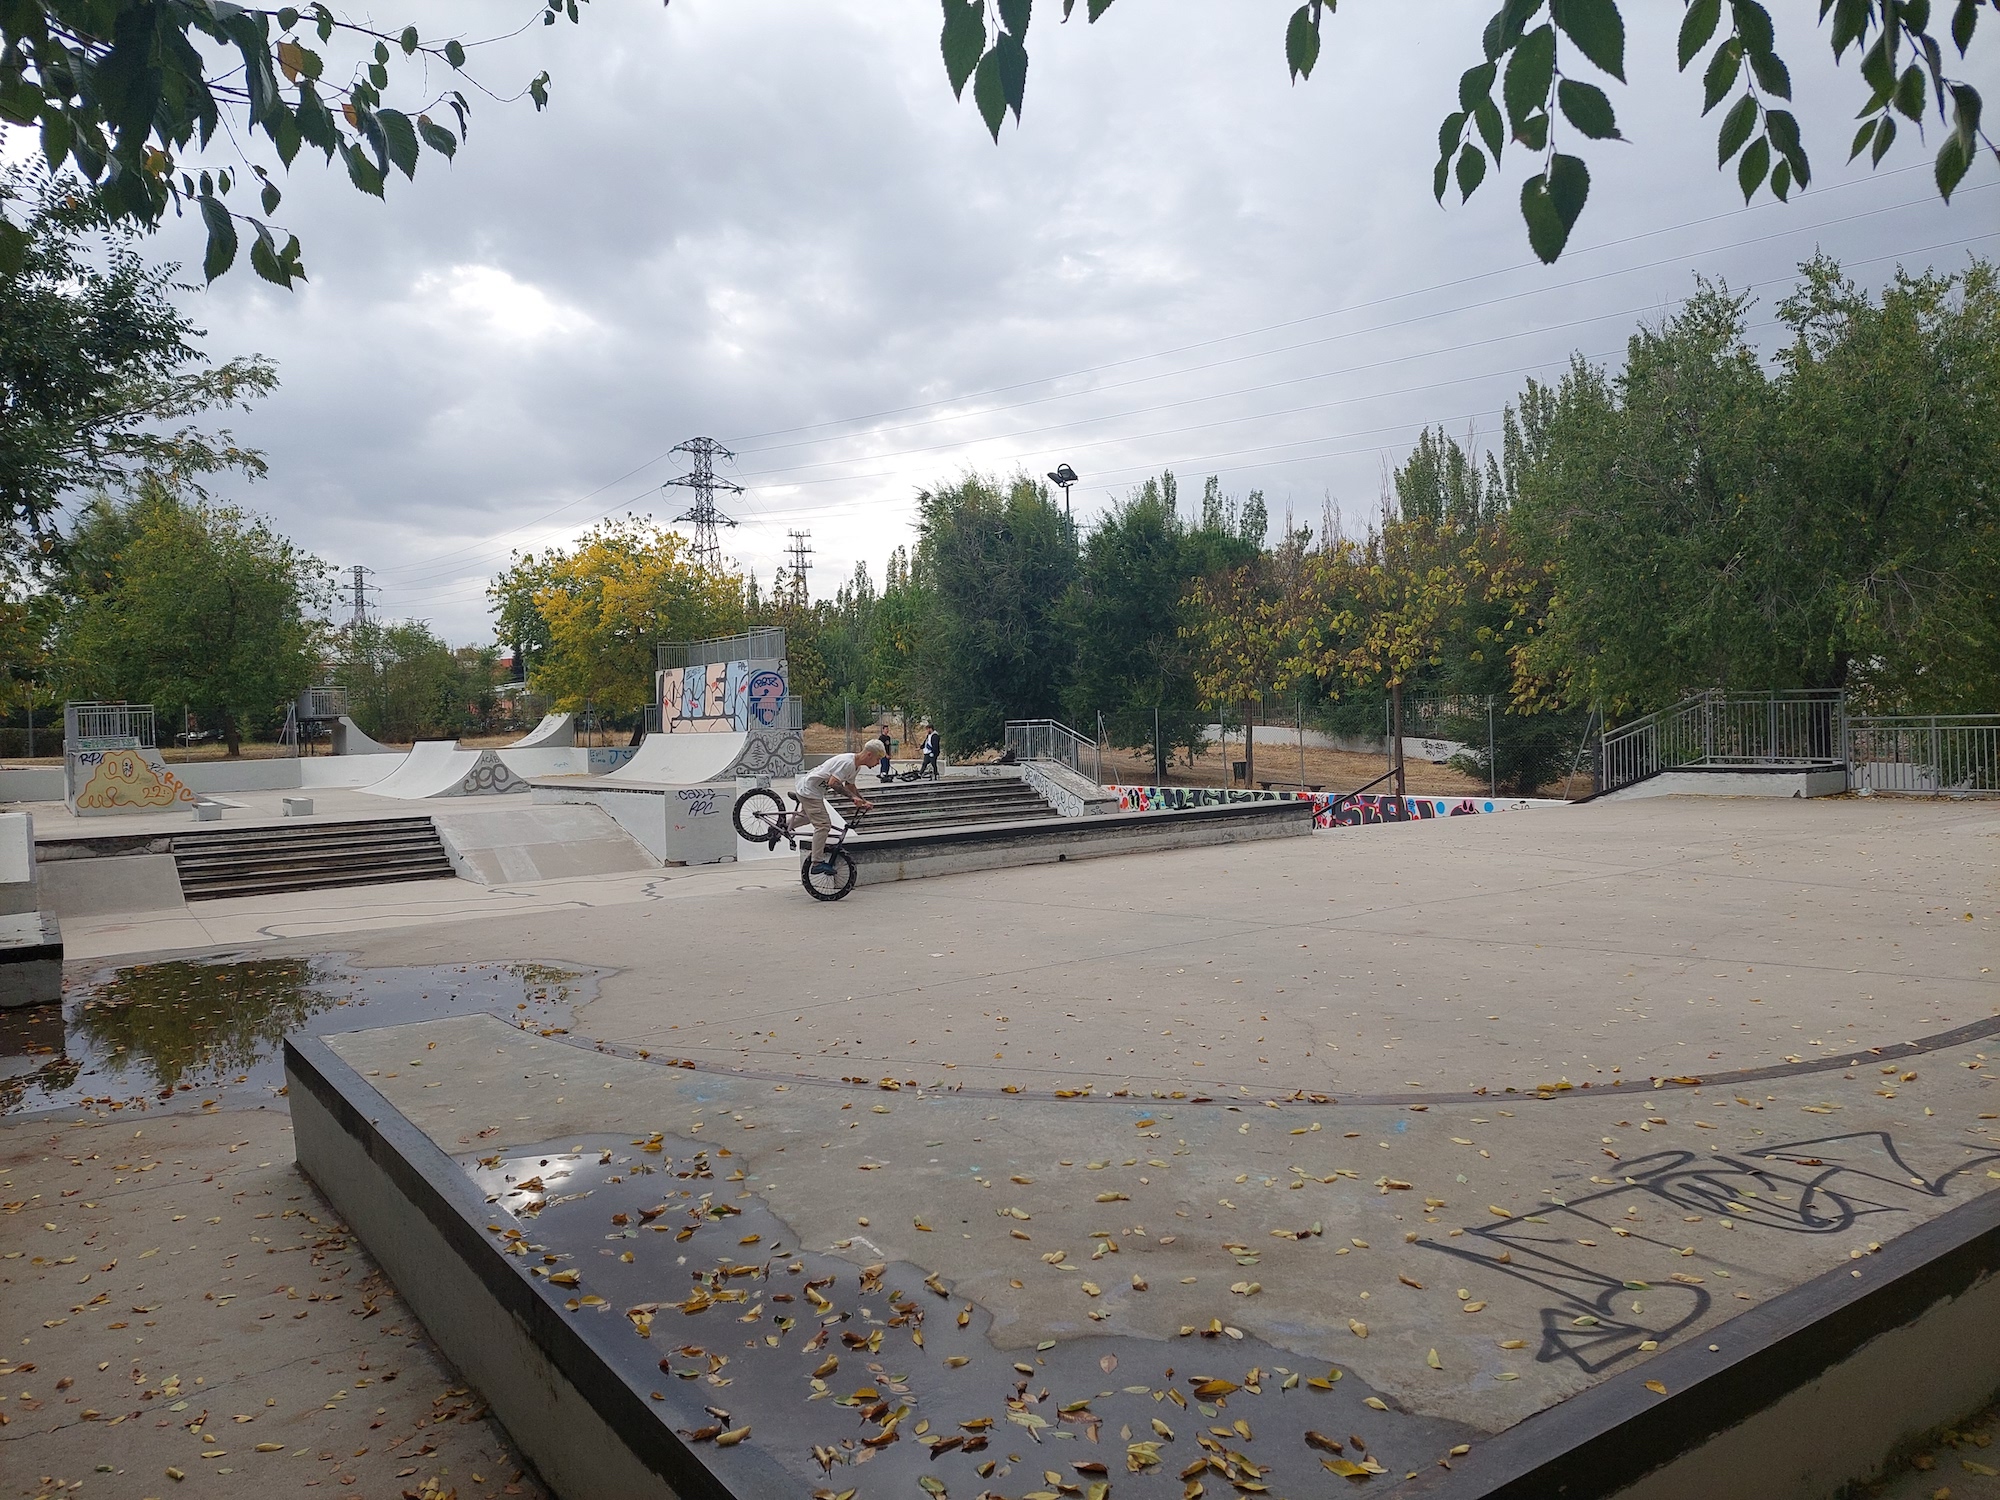 San Jose De Valderas skatepark